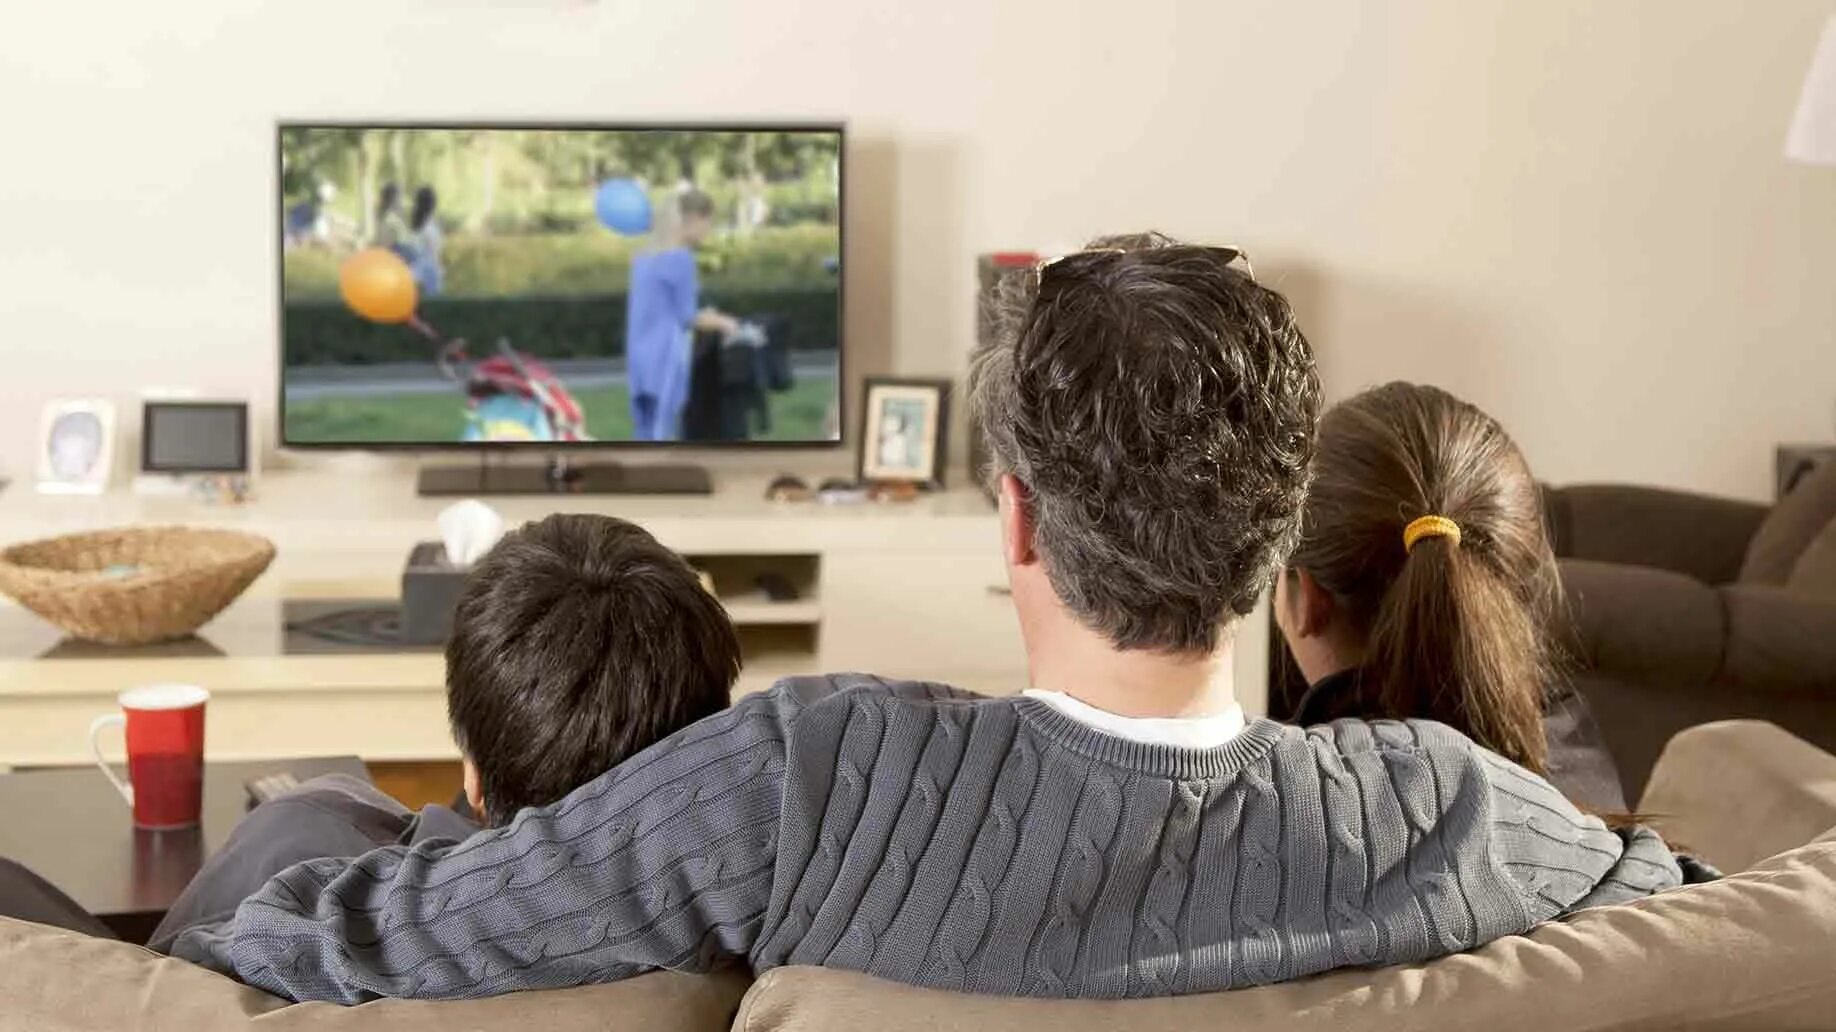 Видео просмотра телевизора. Семья смотрит телевизор. Человек перед телевизором. Телезрители. Семья перед ТВ.